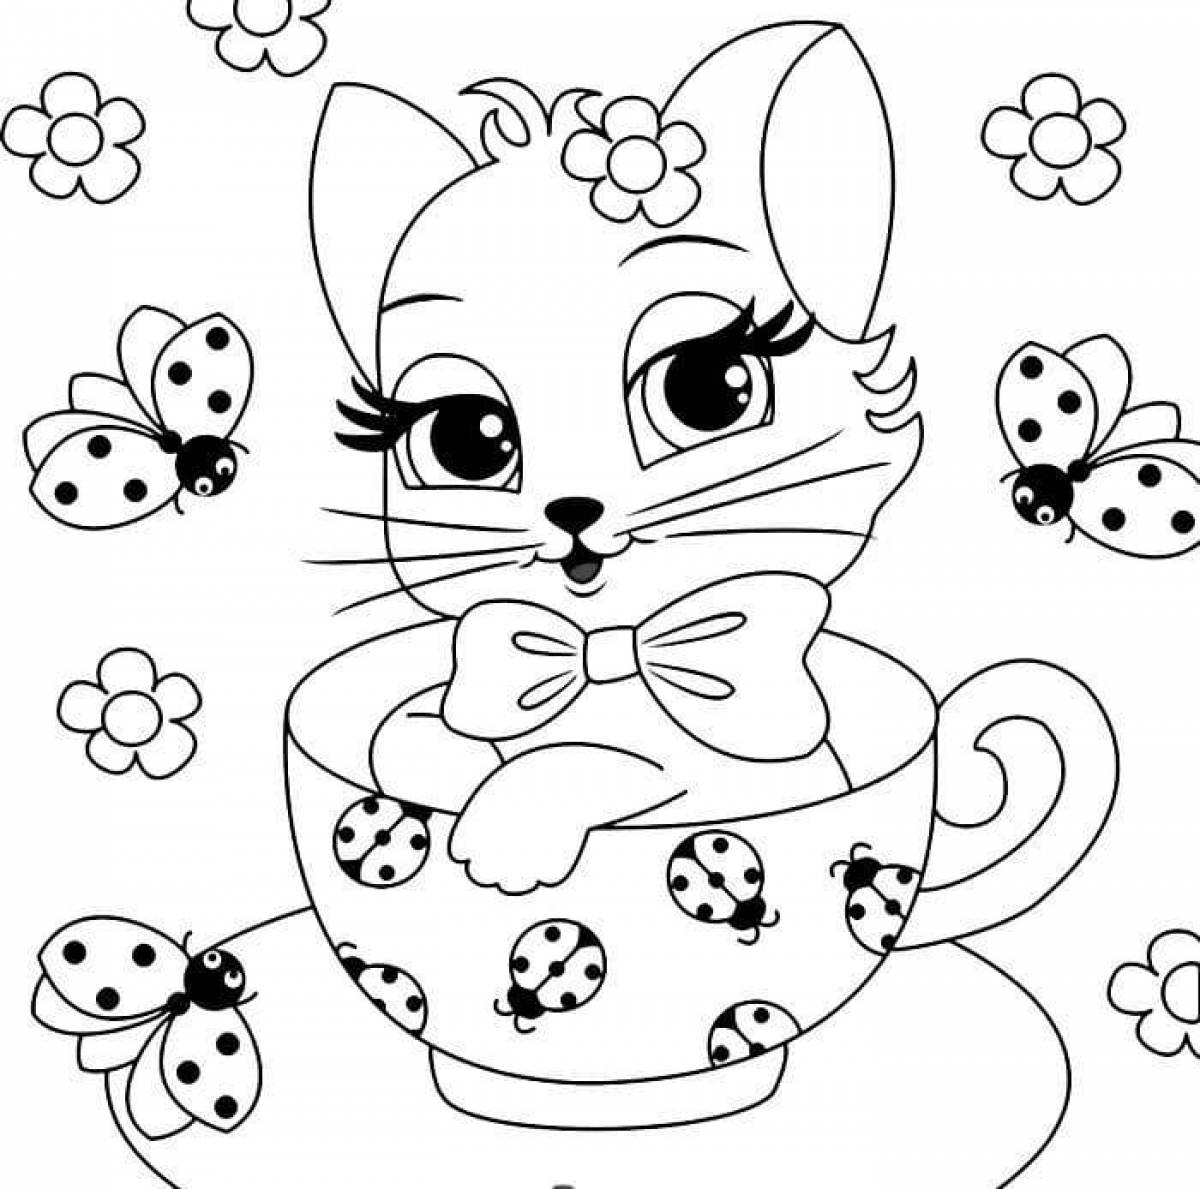 Magic cat coloring book for girls